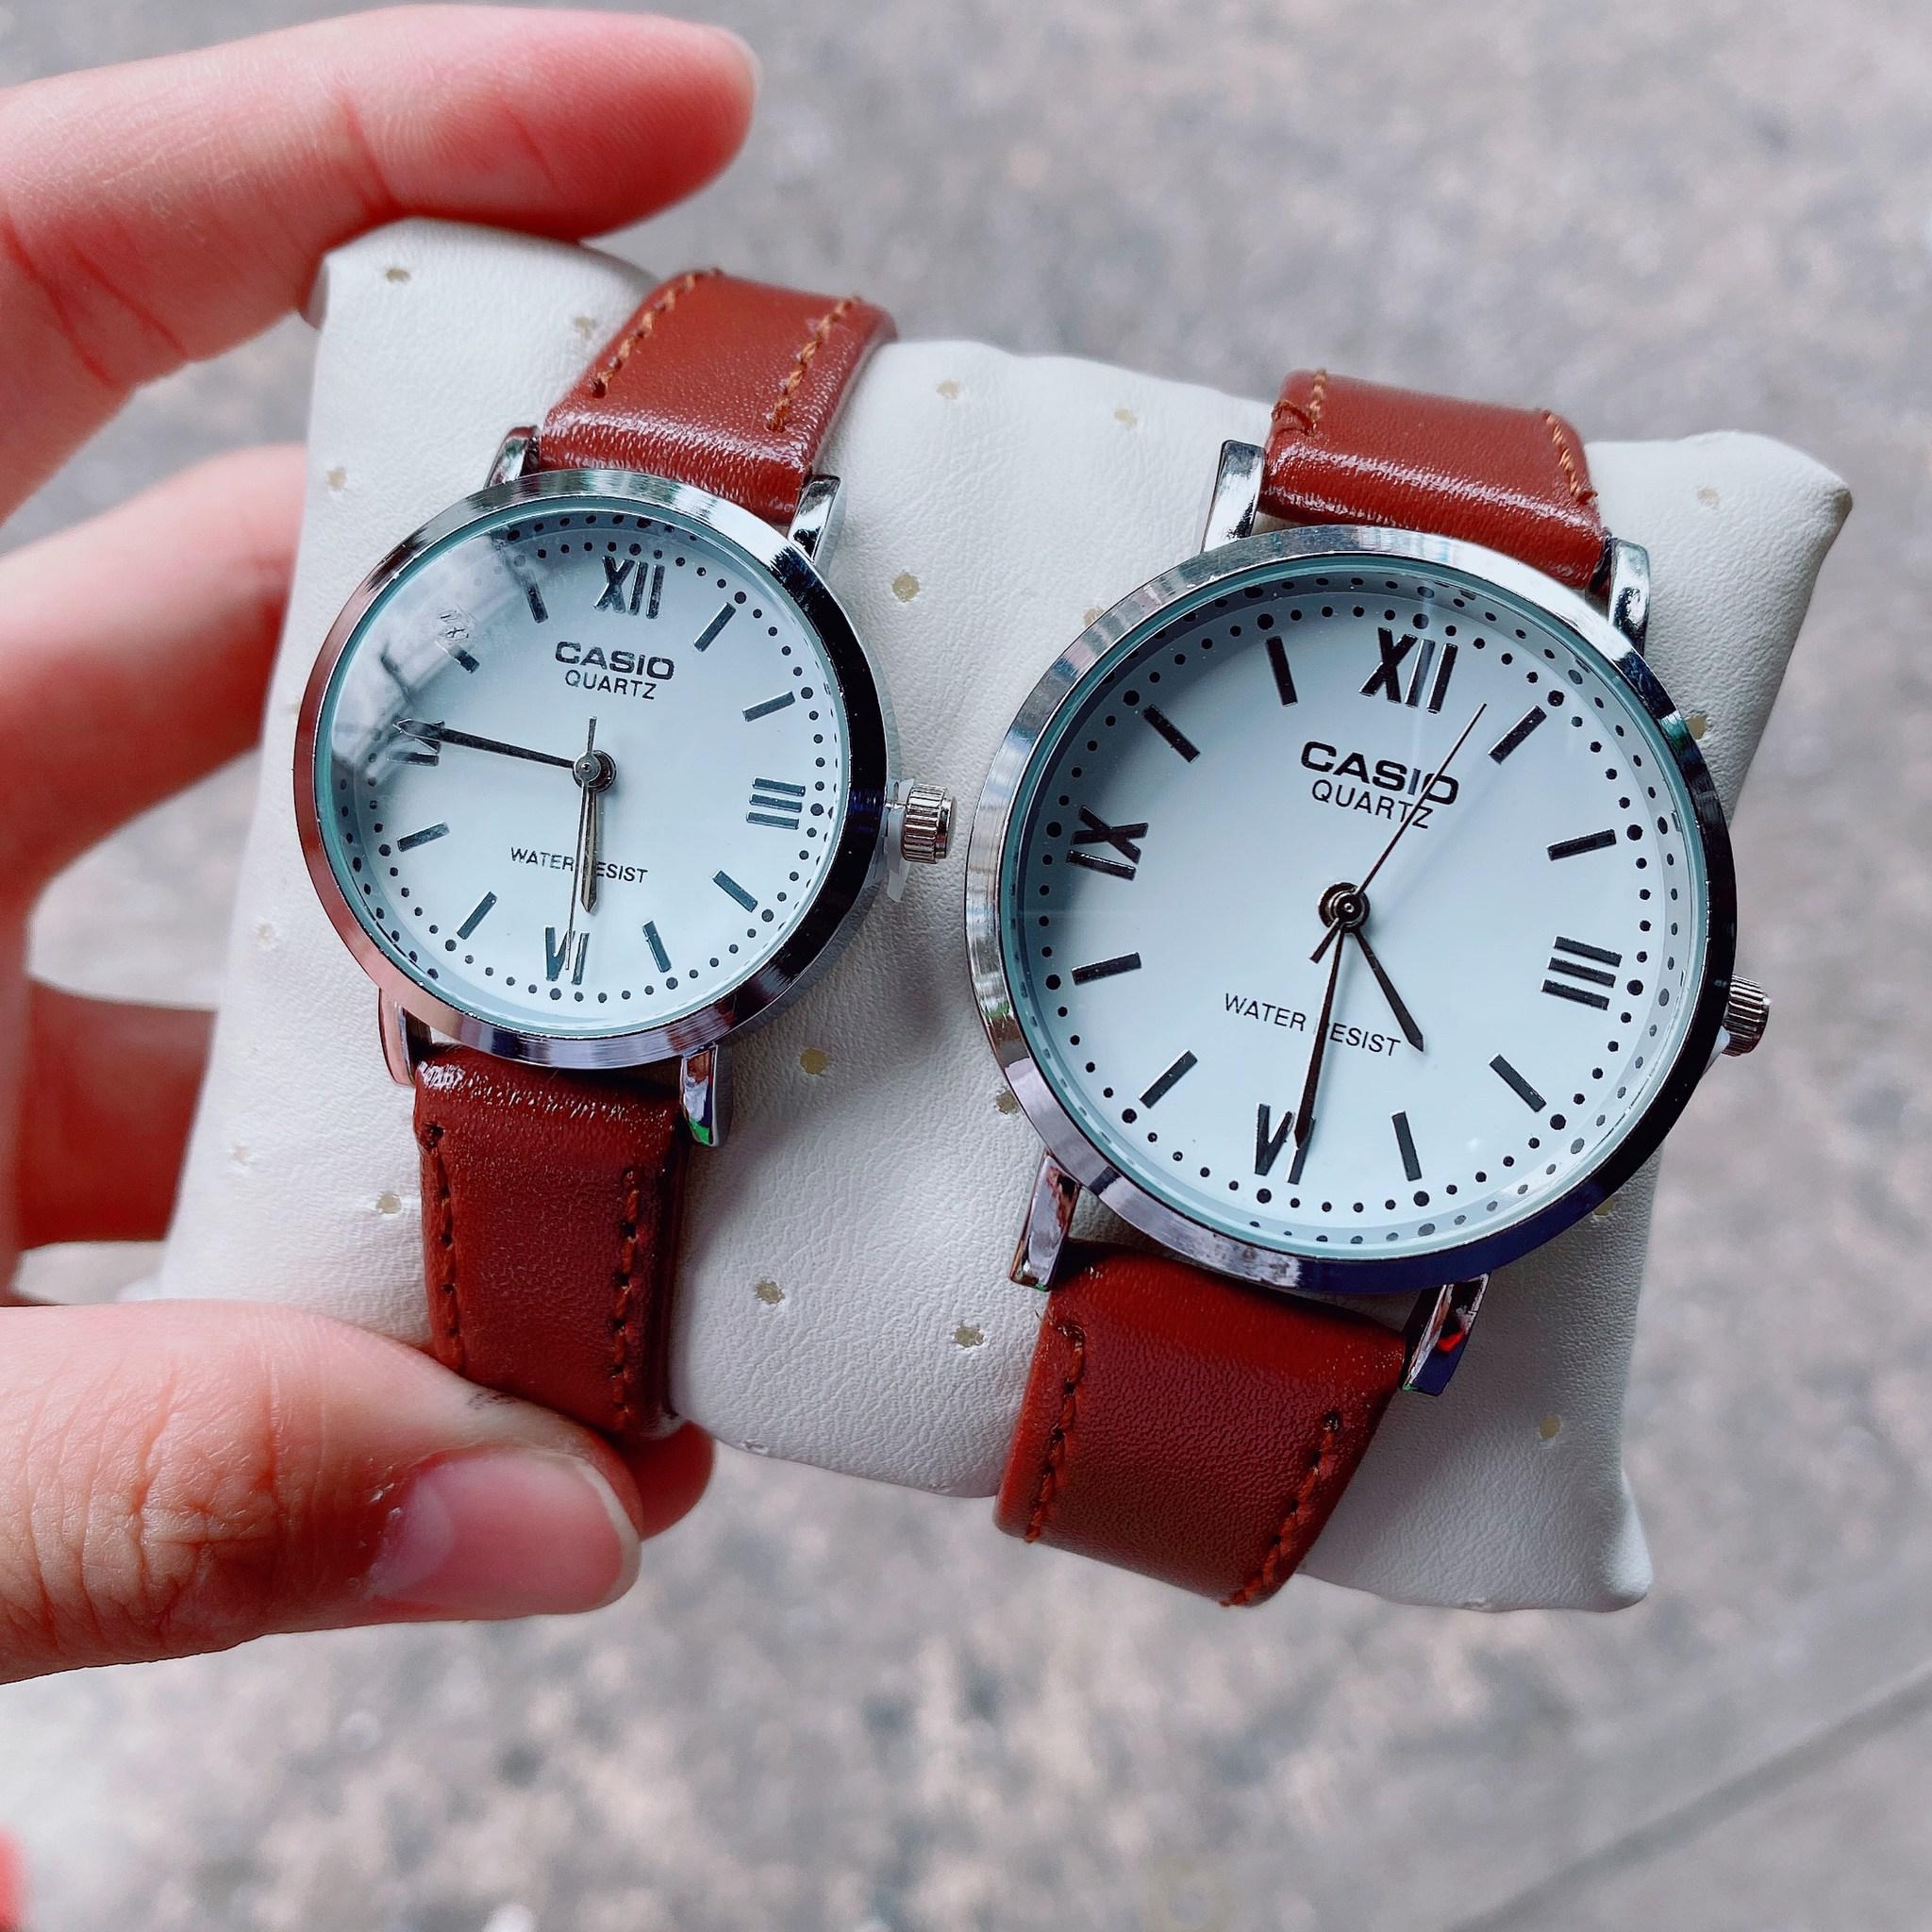 นาฬิกา Casio สายหนัง คู่รัก หน้าเลขโรมันสลับขีด  แถมฟรีผ้าเช็ด+เซ็ตเวลา